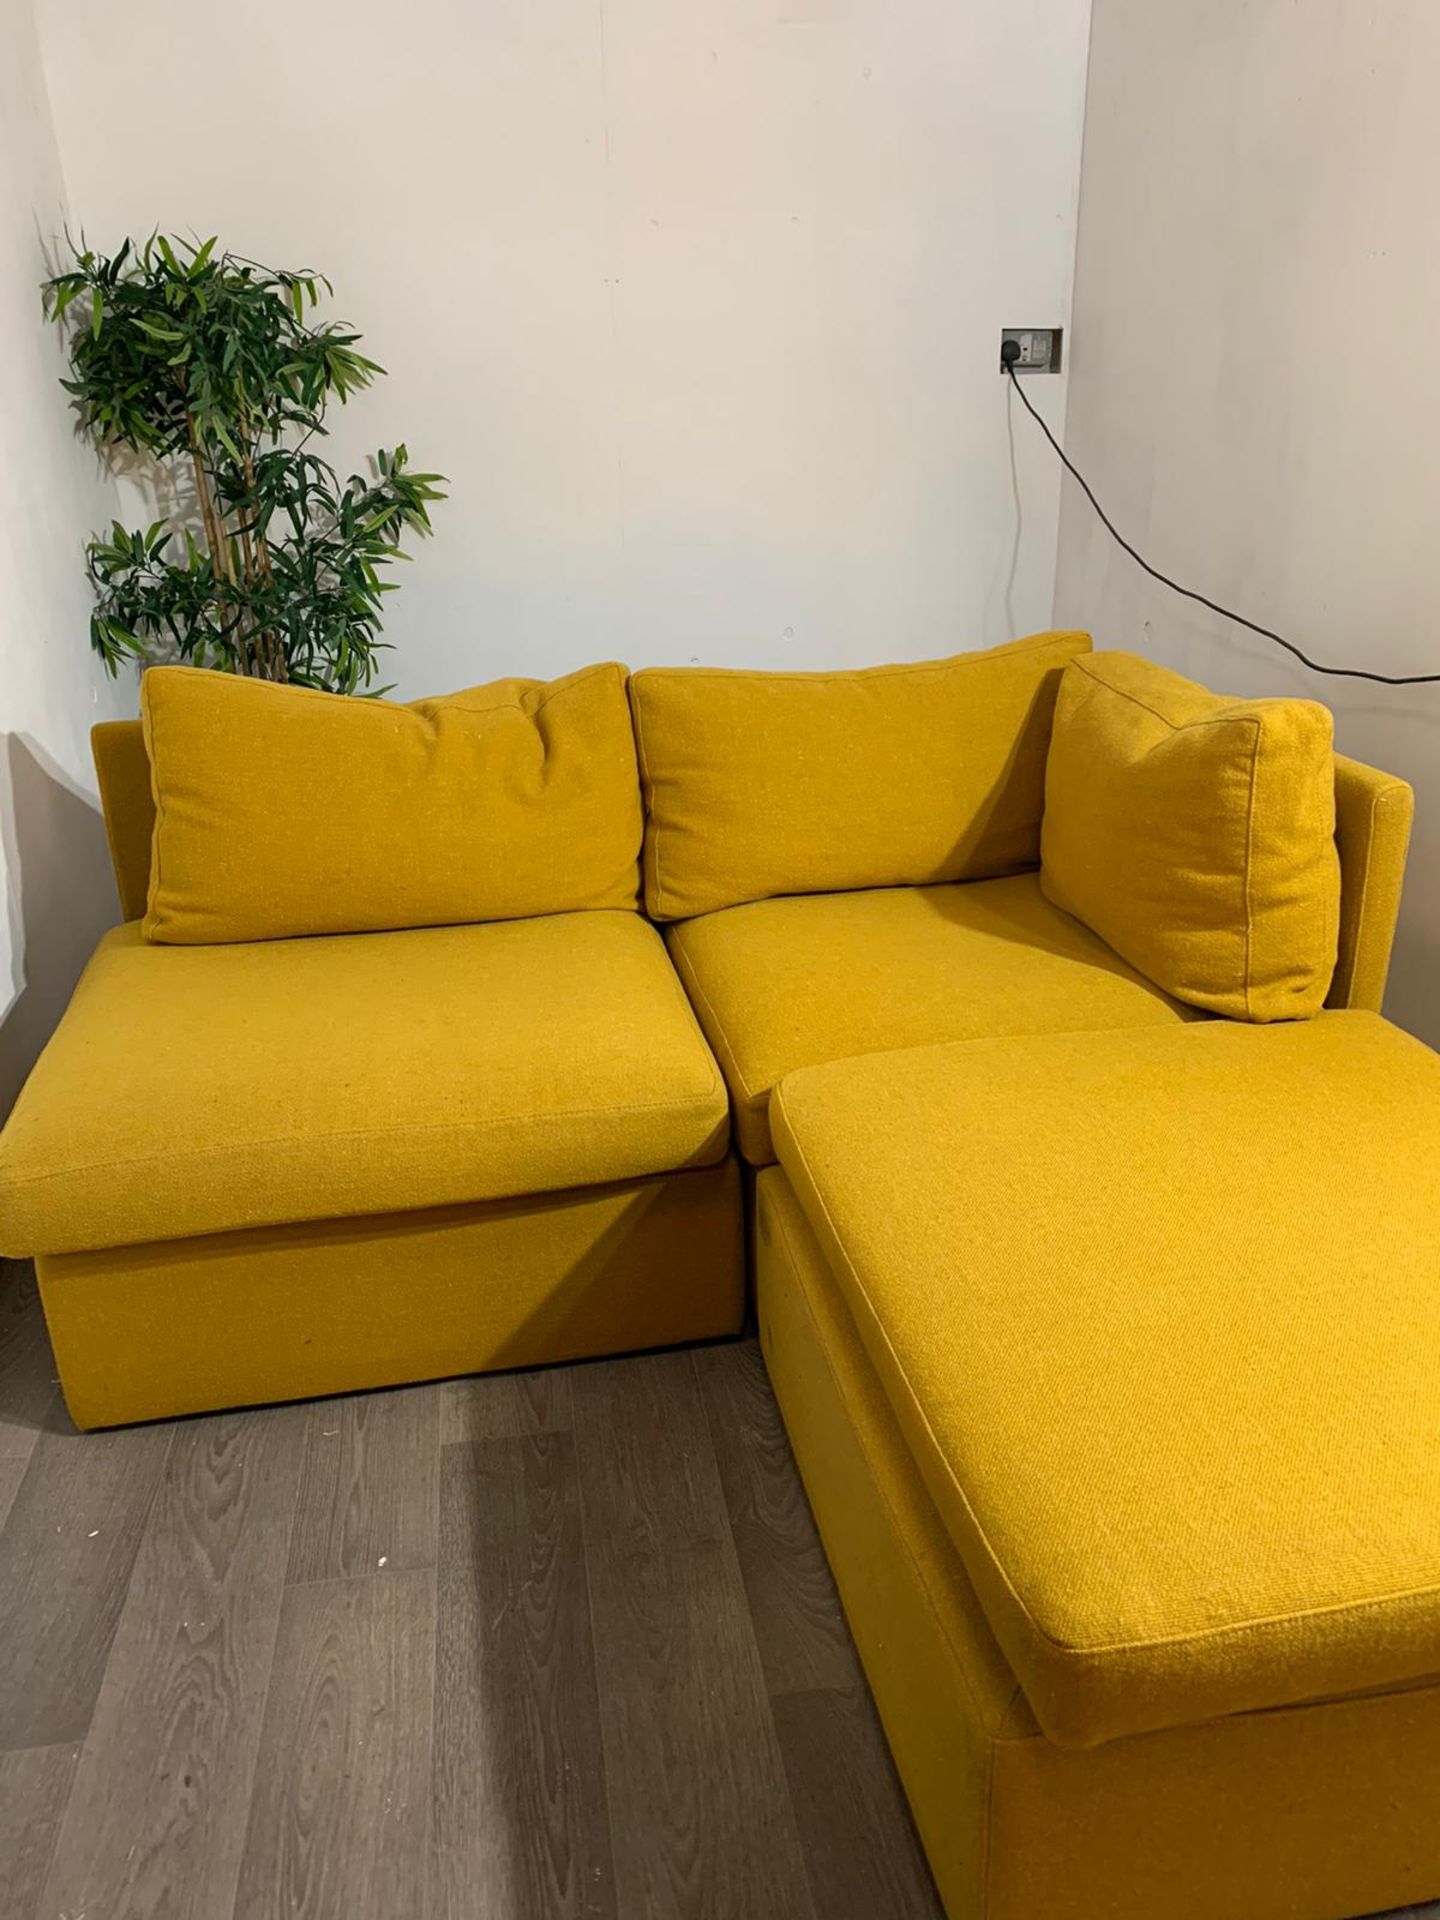 Modular 3 piece sofa - Image 2 of 6